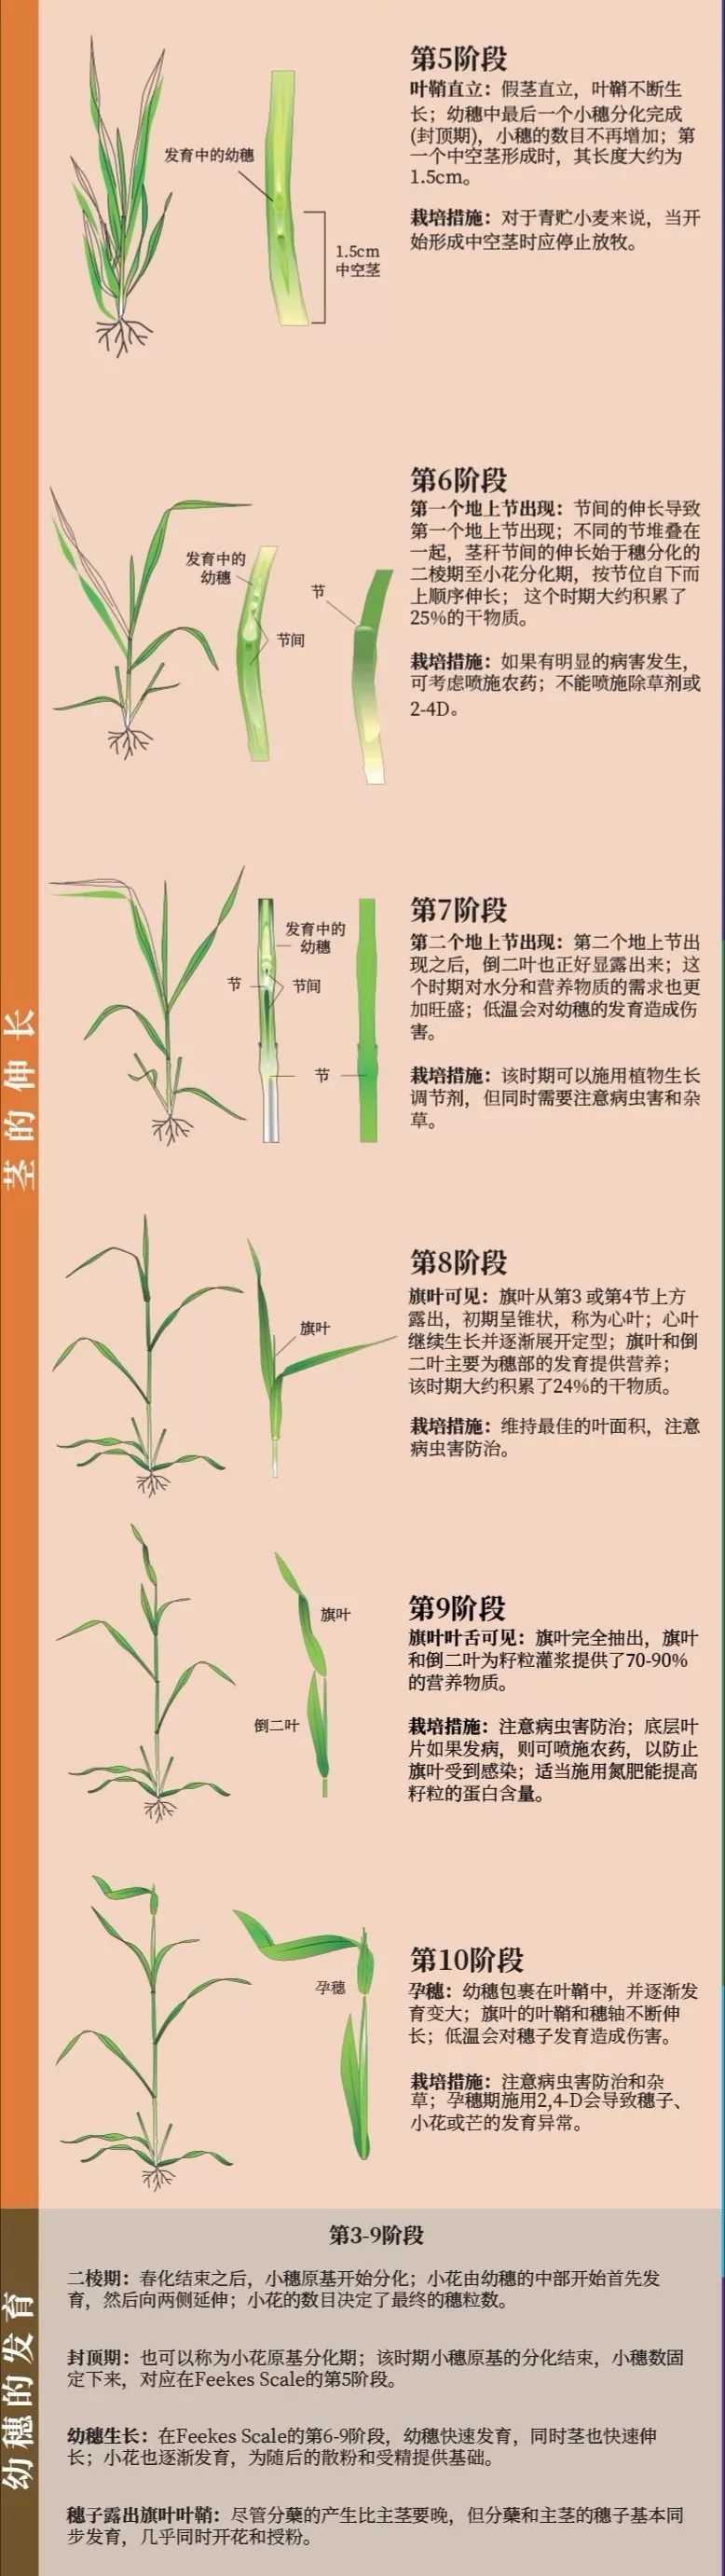 超级完美图解小麦种子萌发到完熟全过程